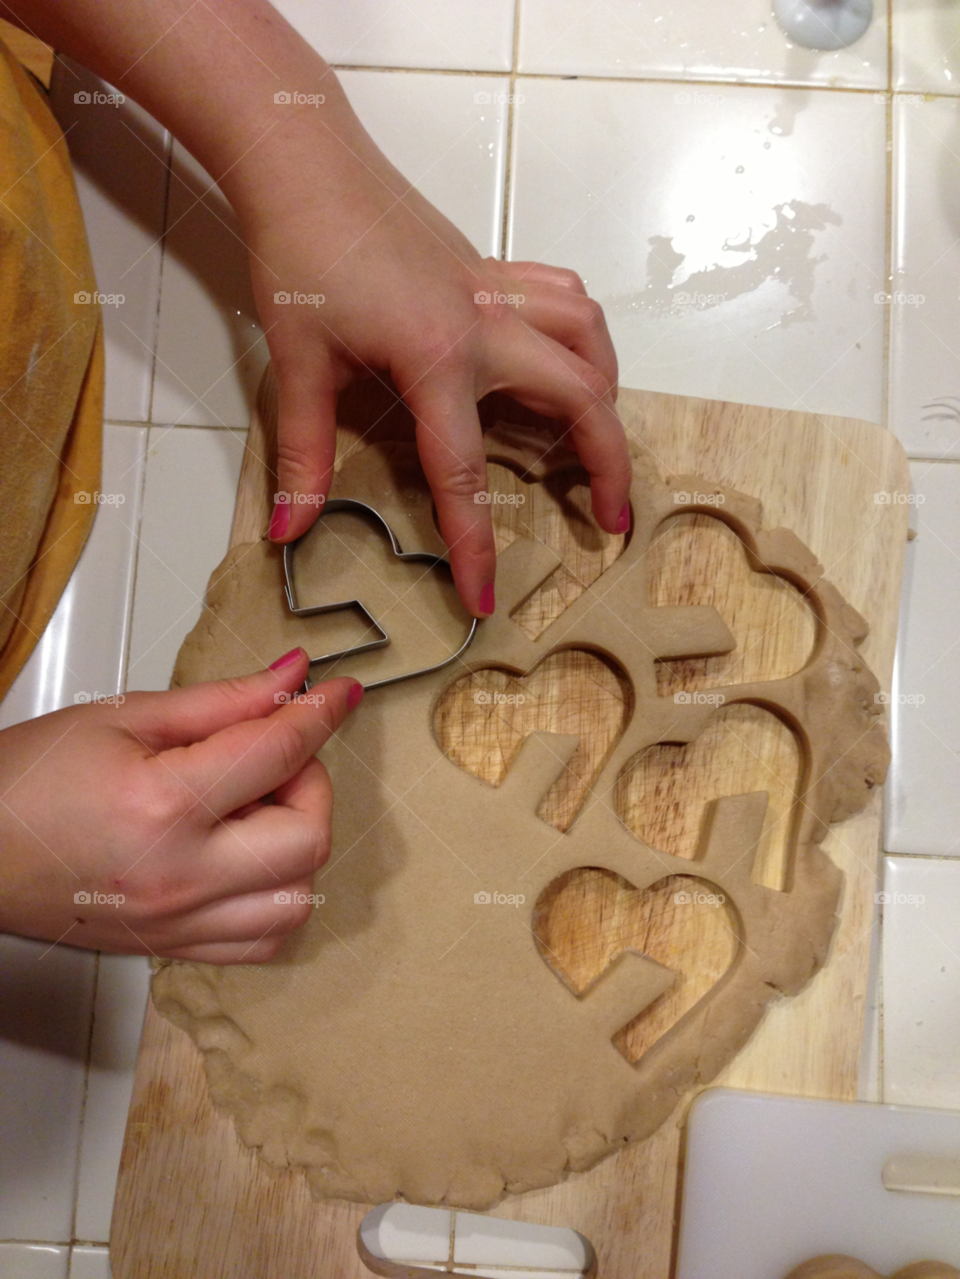 baking hands love female by gene916